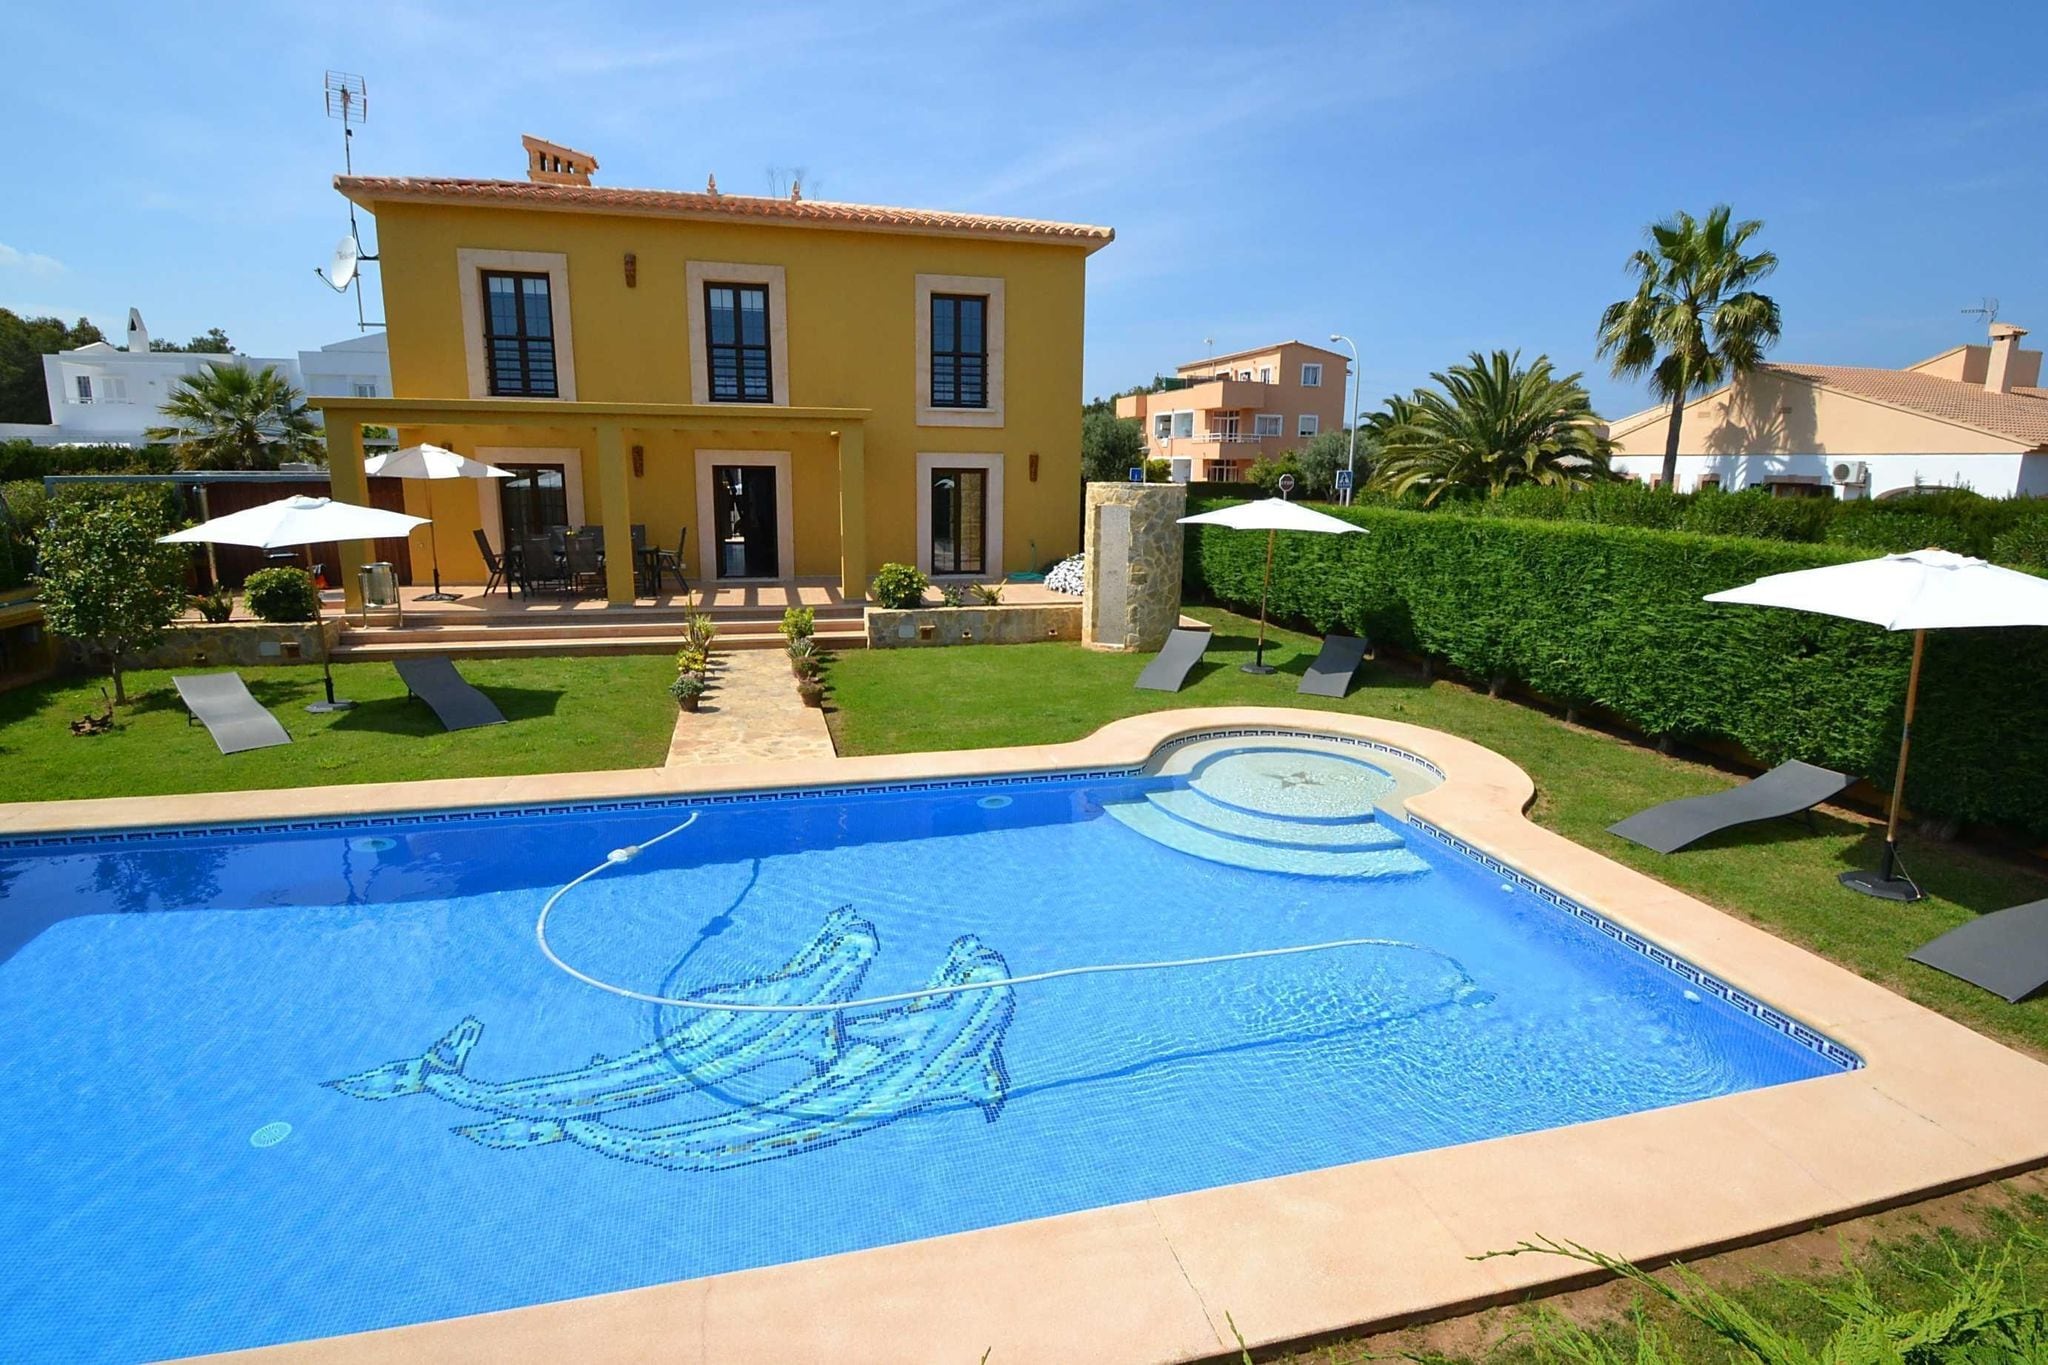 Villa confortable pour 8 personnes avec piscine située près de la plage de sable